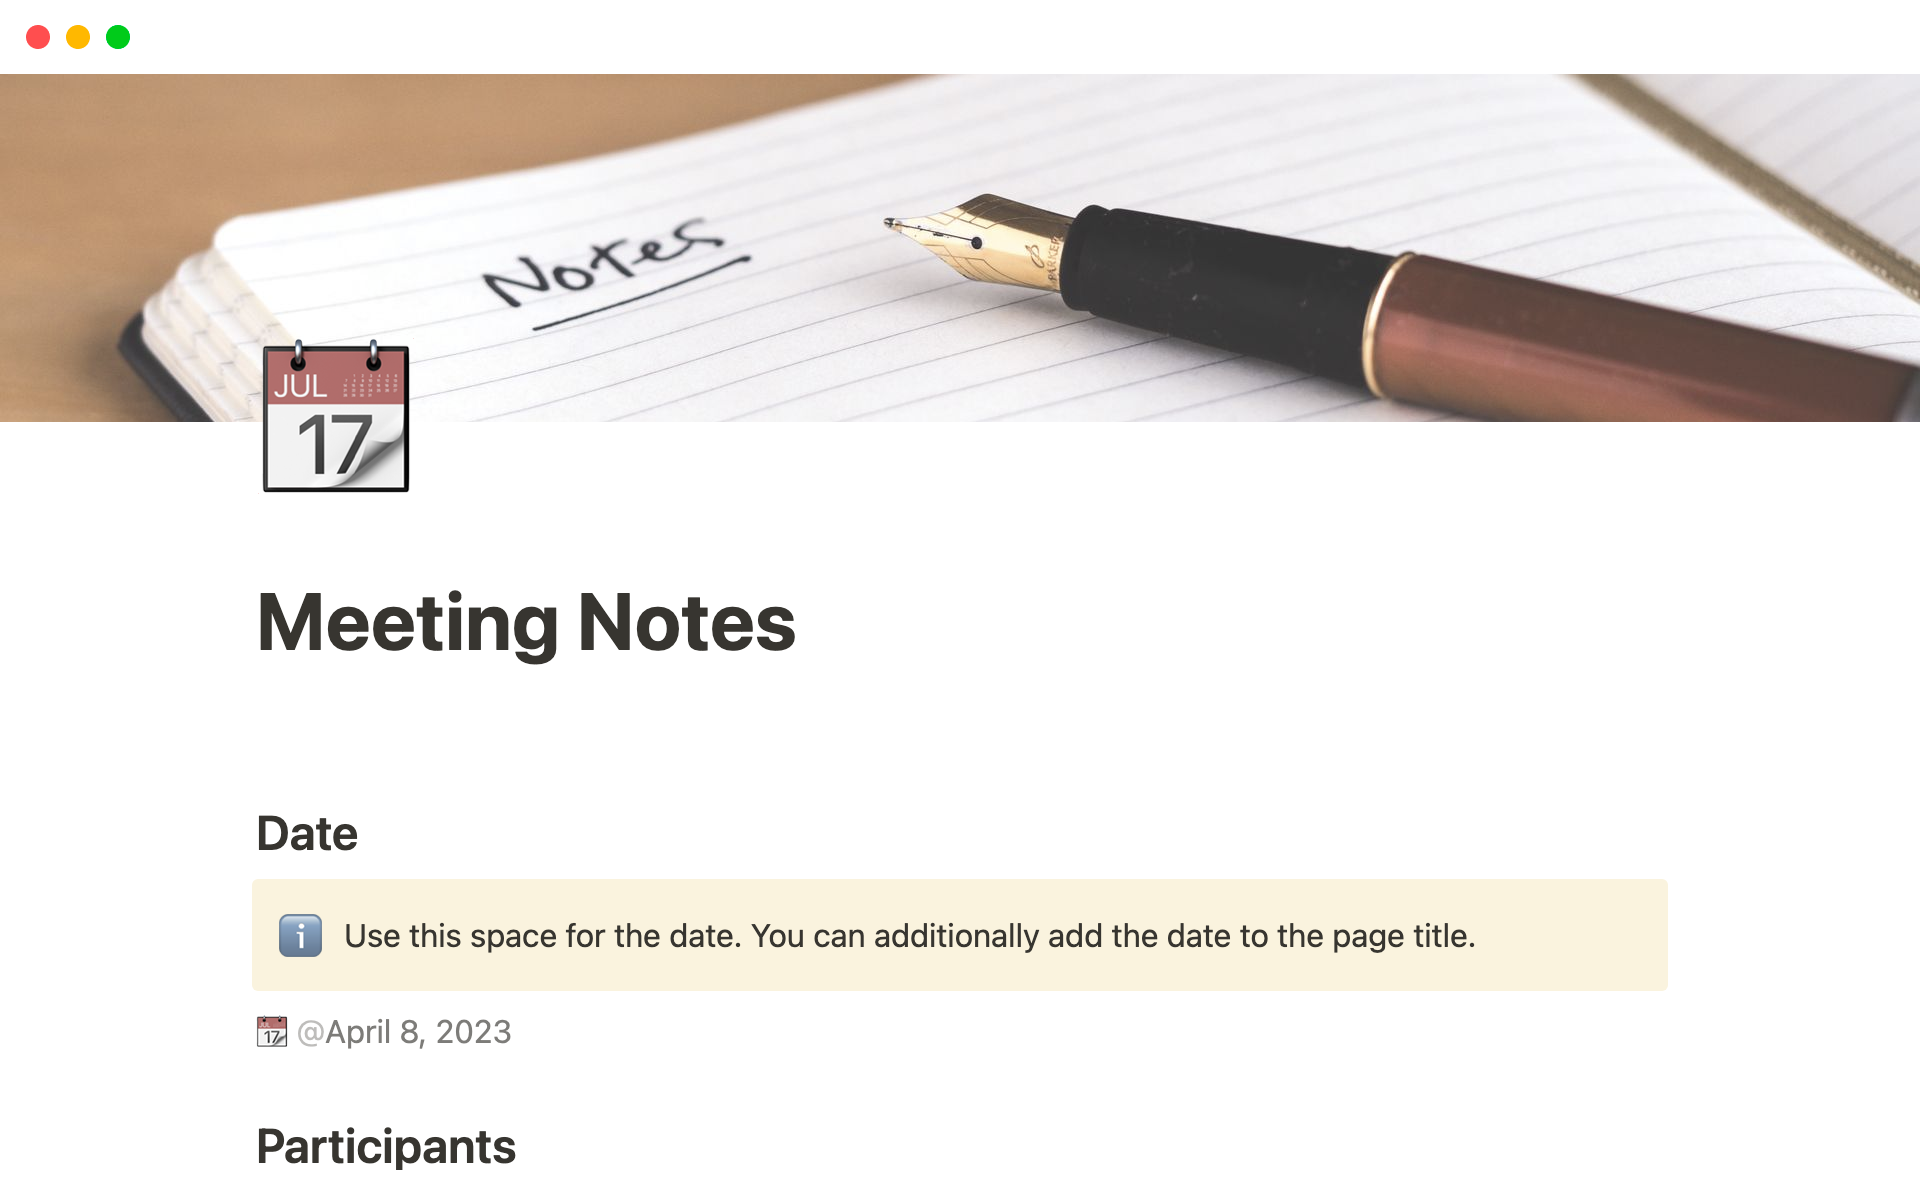 Captura de tela da coleção Top Free Meeting Notes Templates in Notion por Notion